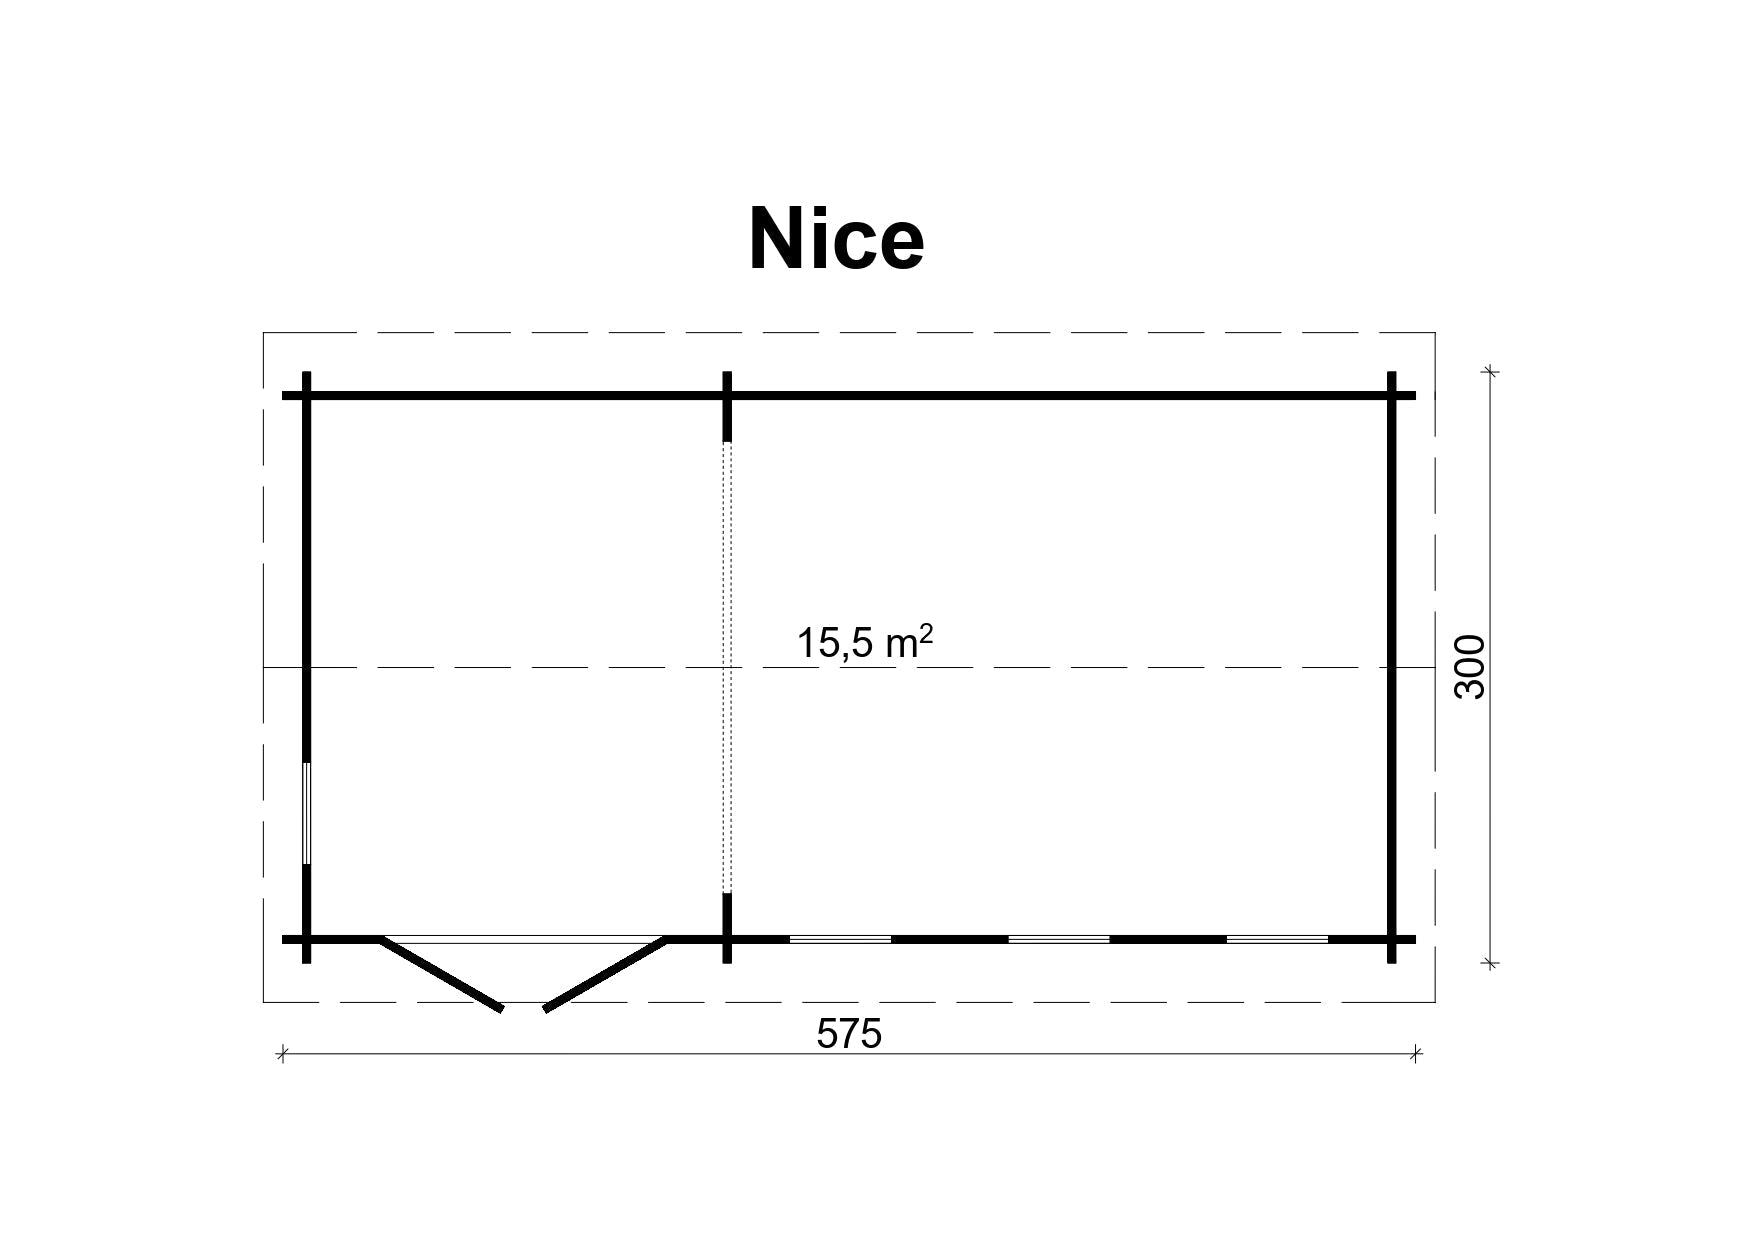 NICE 5.8x3.0m Log Cabin Plan